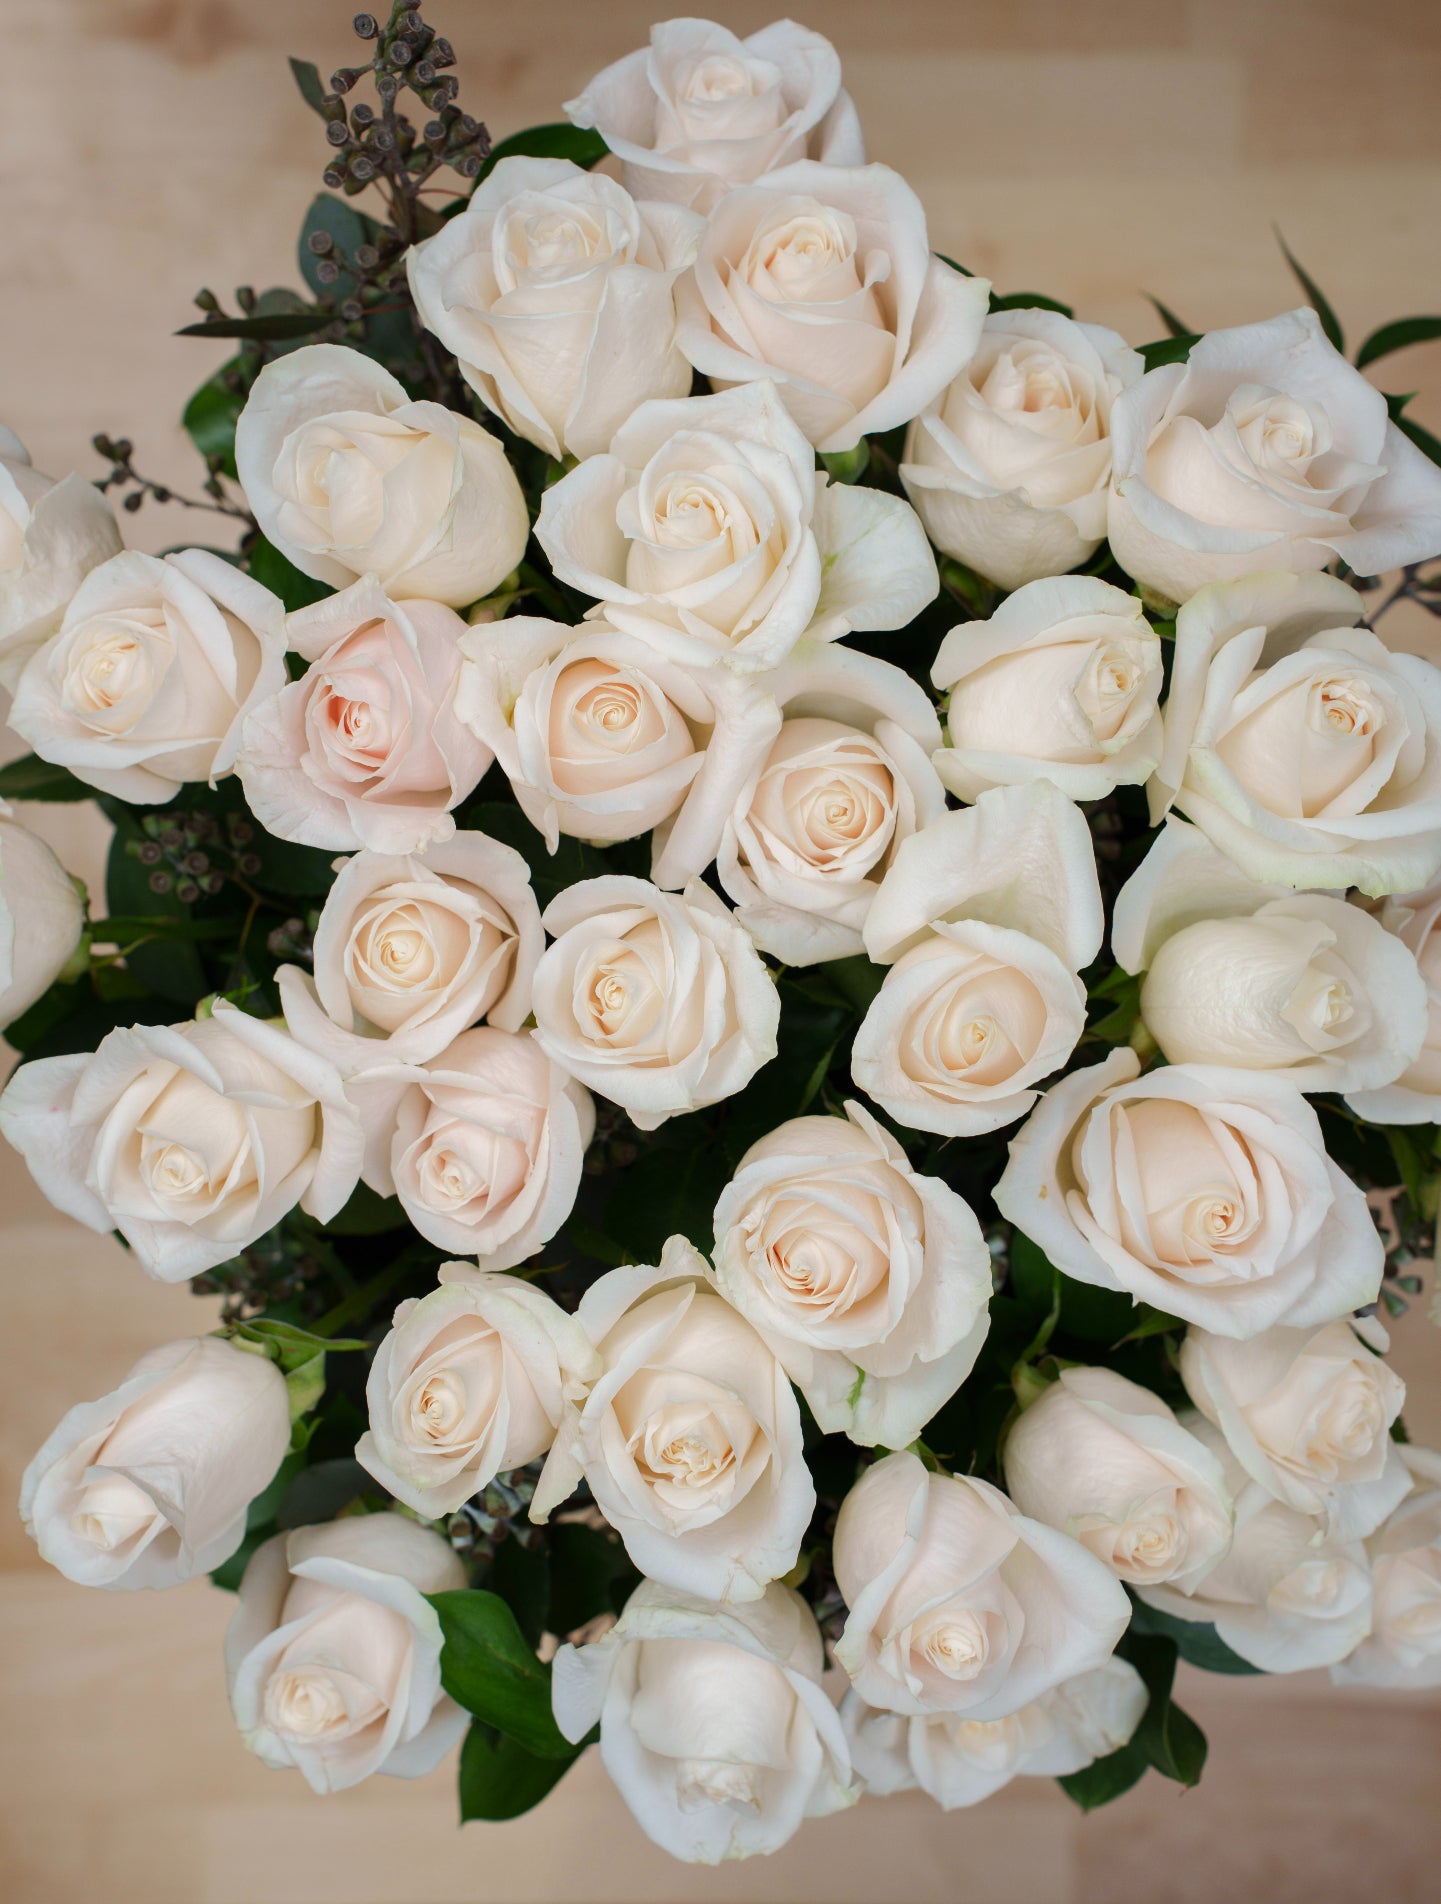 36 White Roses